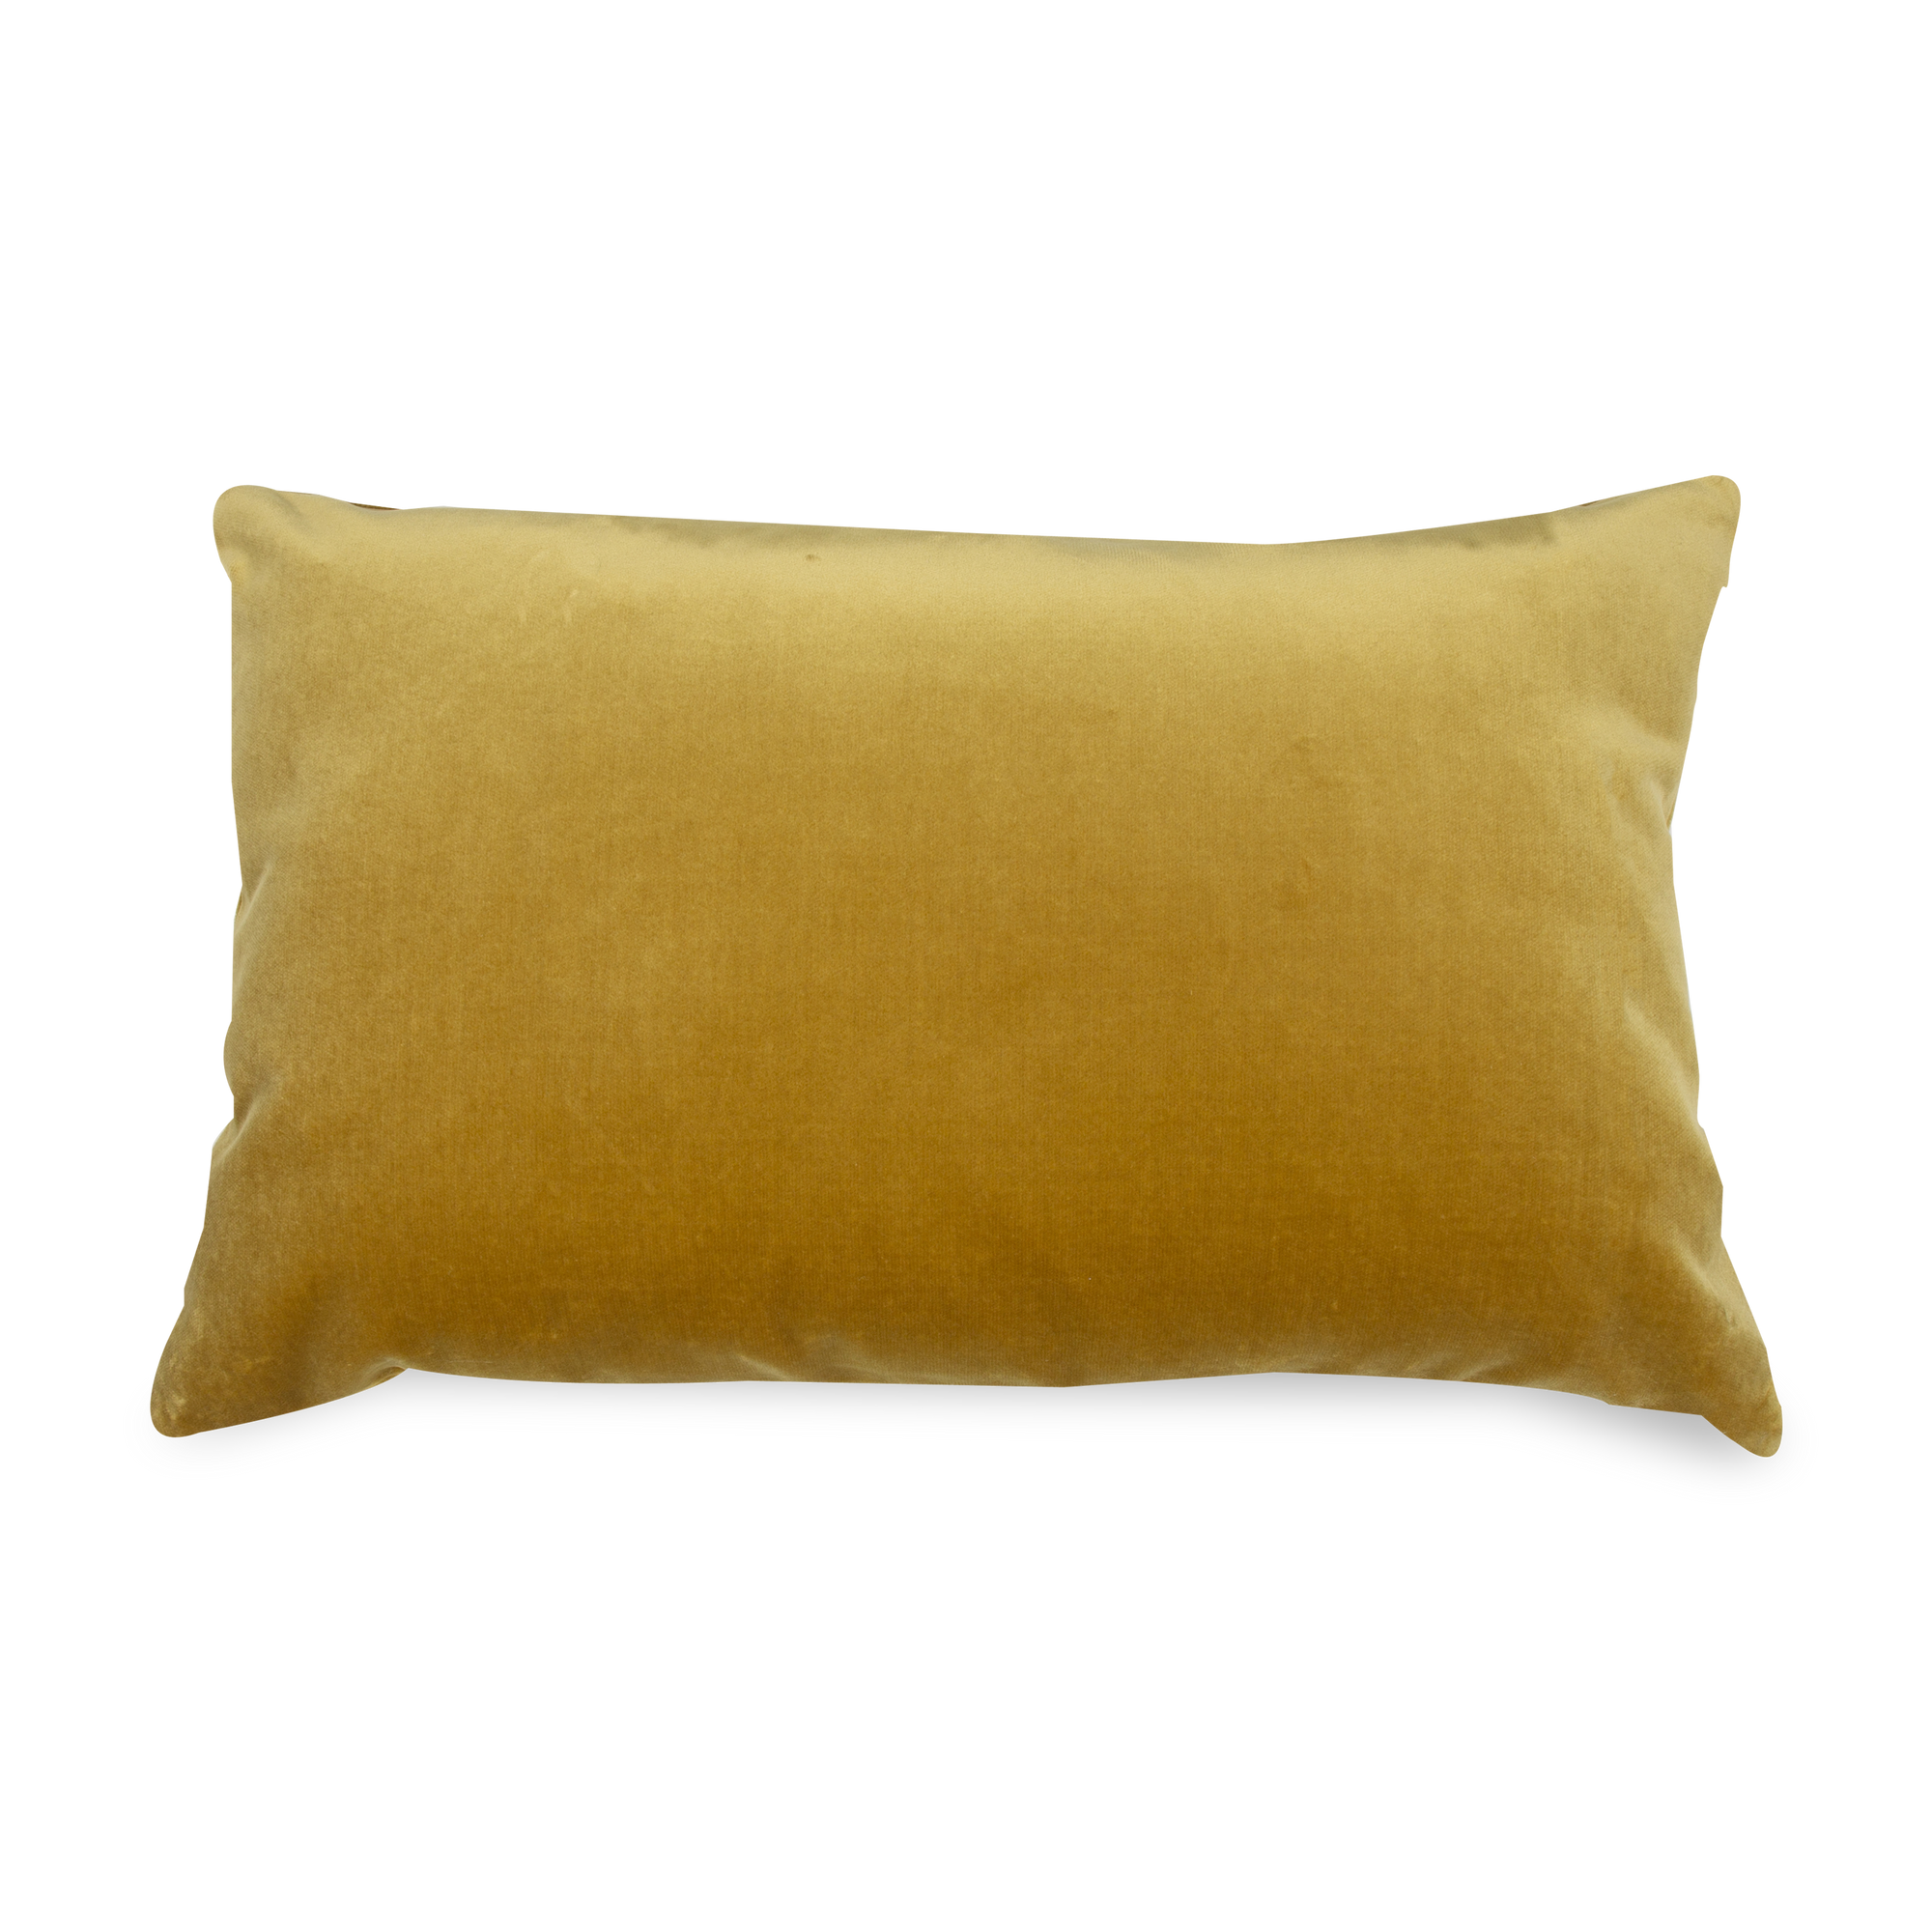 The Vince Velvet Pillow in citron velvet is simple in design but rich in colour.